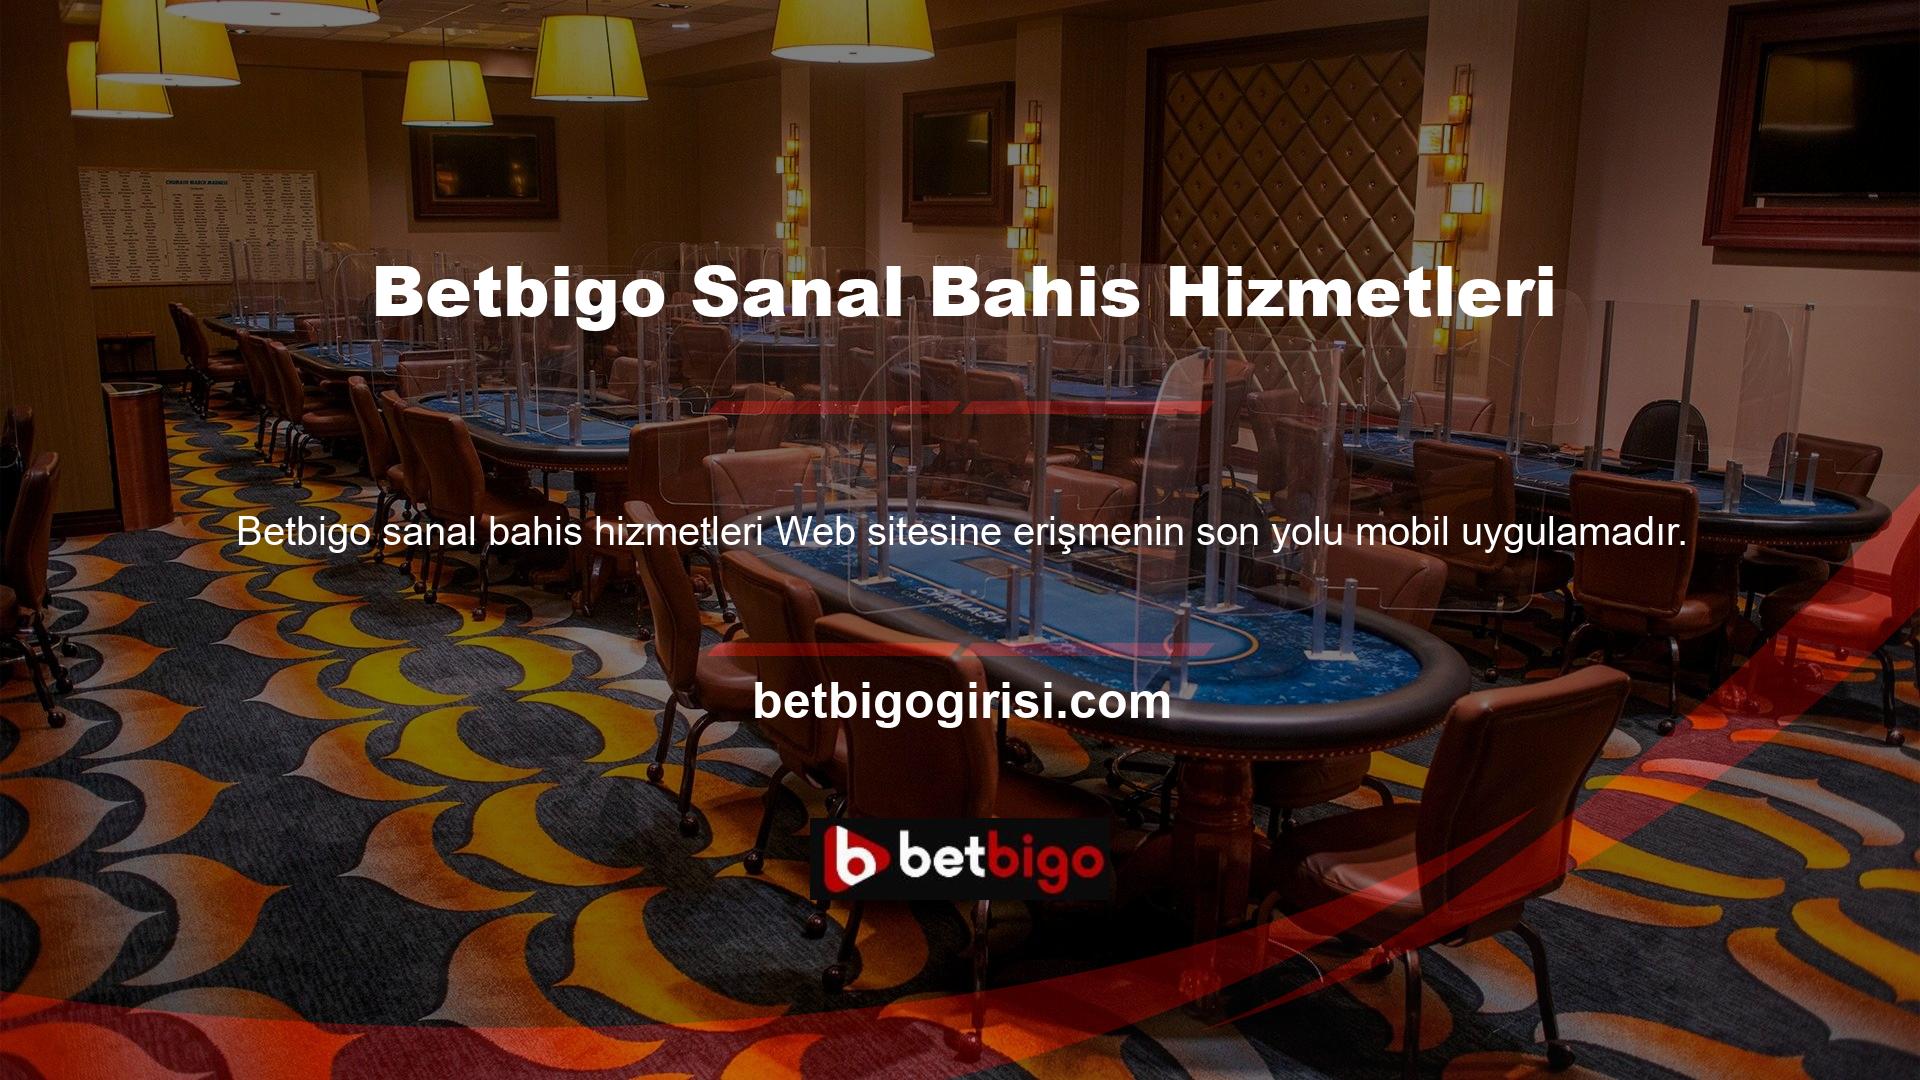 Mobil uygulamayı indirmek için öncelikle Betbigo mobil sitesine giriş yapmalısınız